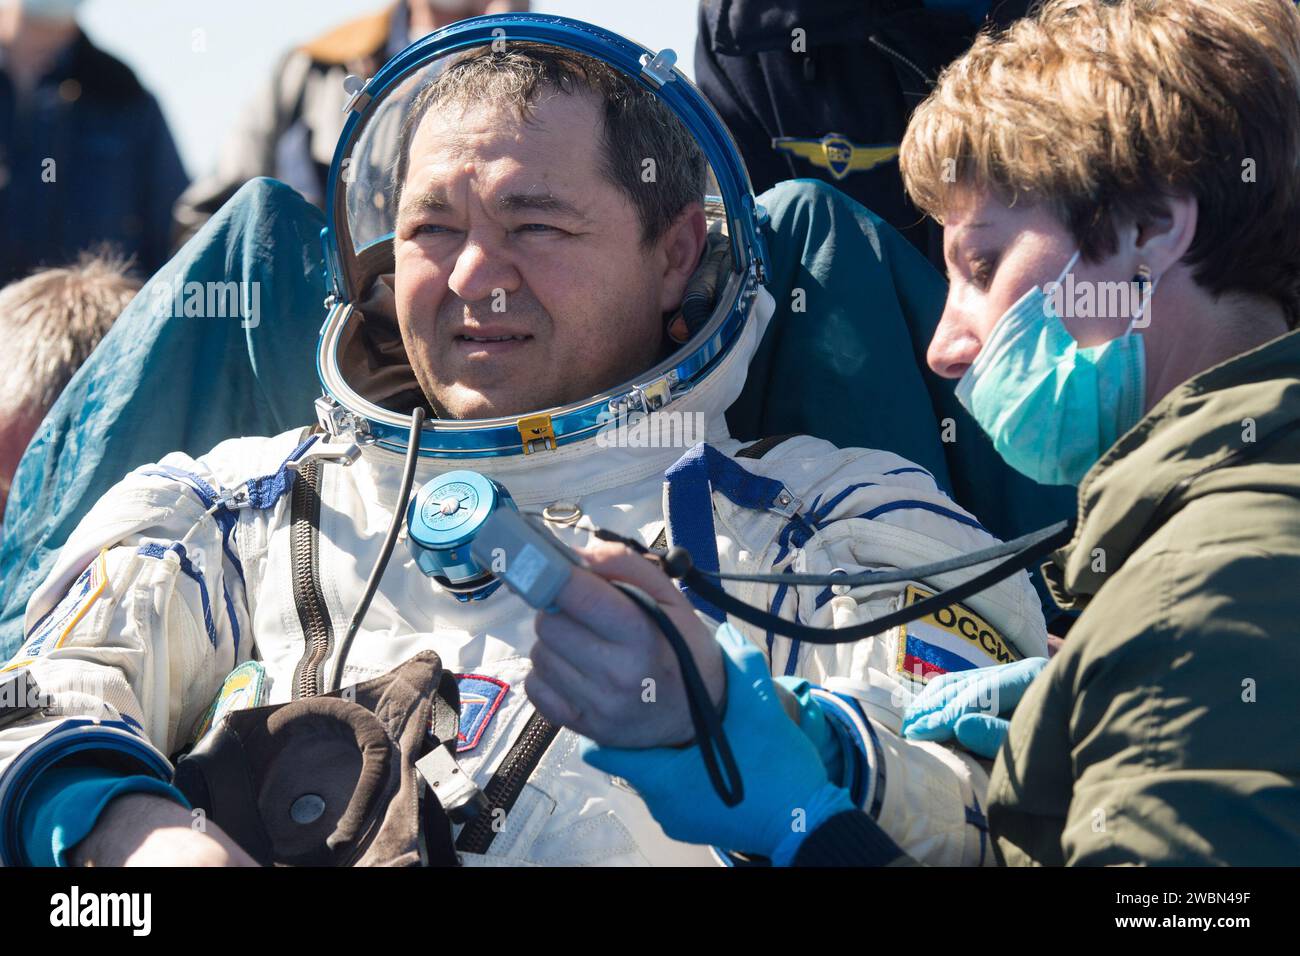 Der Kosmonaut Oleg Skripochka der Expedition 62 ist außerhalb der Raumsonde Sojus MS-15 zu sehen, nachdem er mit den NASA-Astronauten Andrew Morgan und Jessica Meir am Freitag, den 17. April 2020 in einer abgelegenen Gegend in der Nähe der Stadt Zhezkazgan in Kasachstan gelandet war. Meir und Skripochka kehrten nach 205 Tagen im Weltraum zurück, Morgan nach 272 Tagen im Weltraum. Alle drei waren als Besatzungsmitglieder der Expedition 60 an Bord der Internationalen Raumstation. Stockfoto